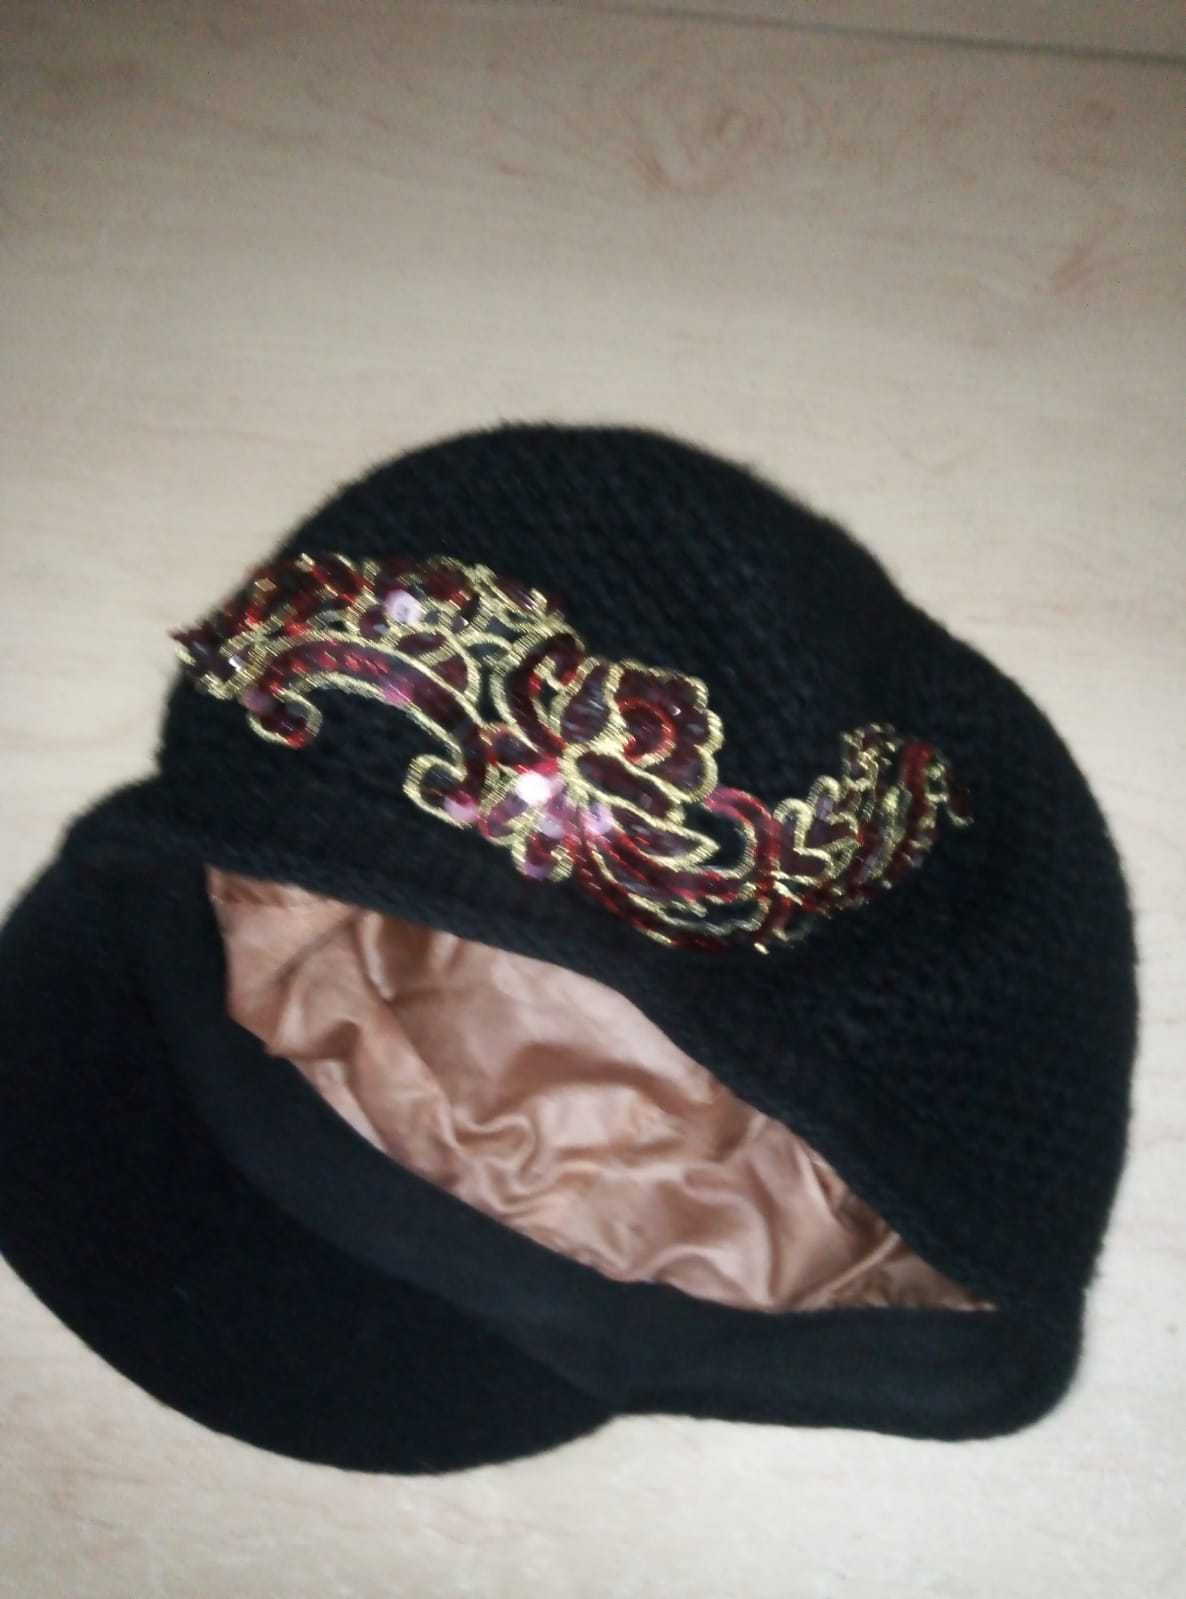 Теплые красивые шапки на зиму разные женские и мужск срочно,недорого